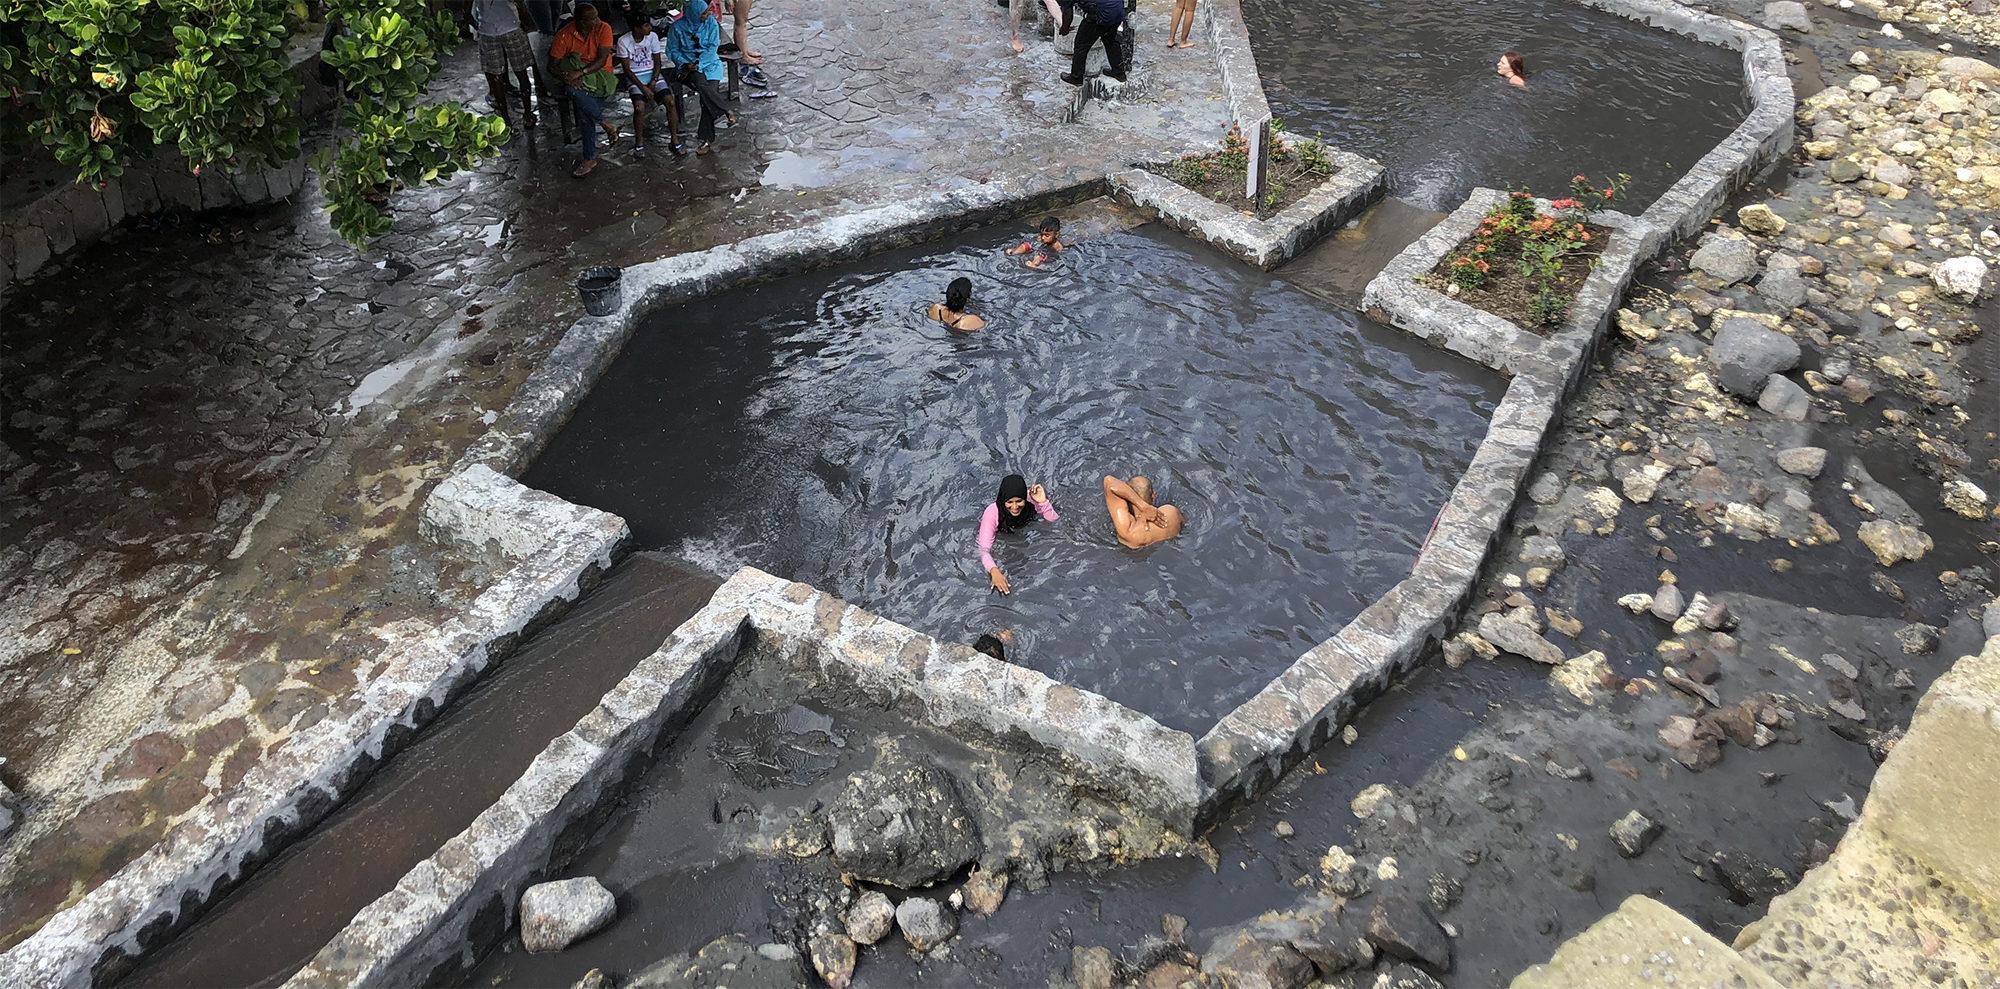 St. Lucia Mud Baths